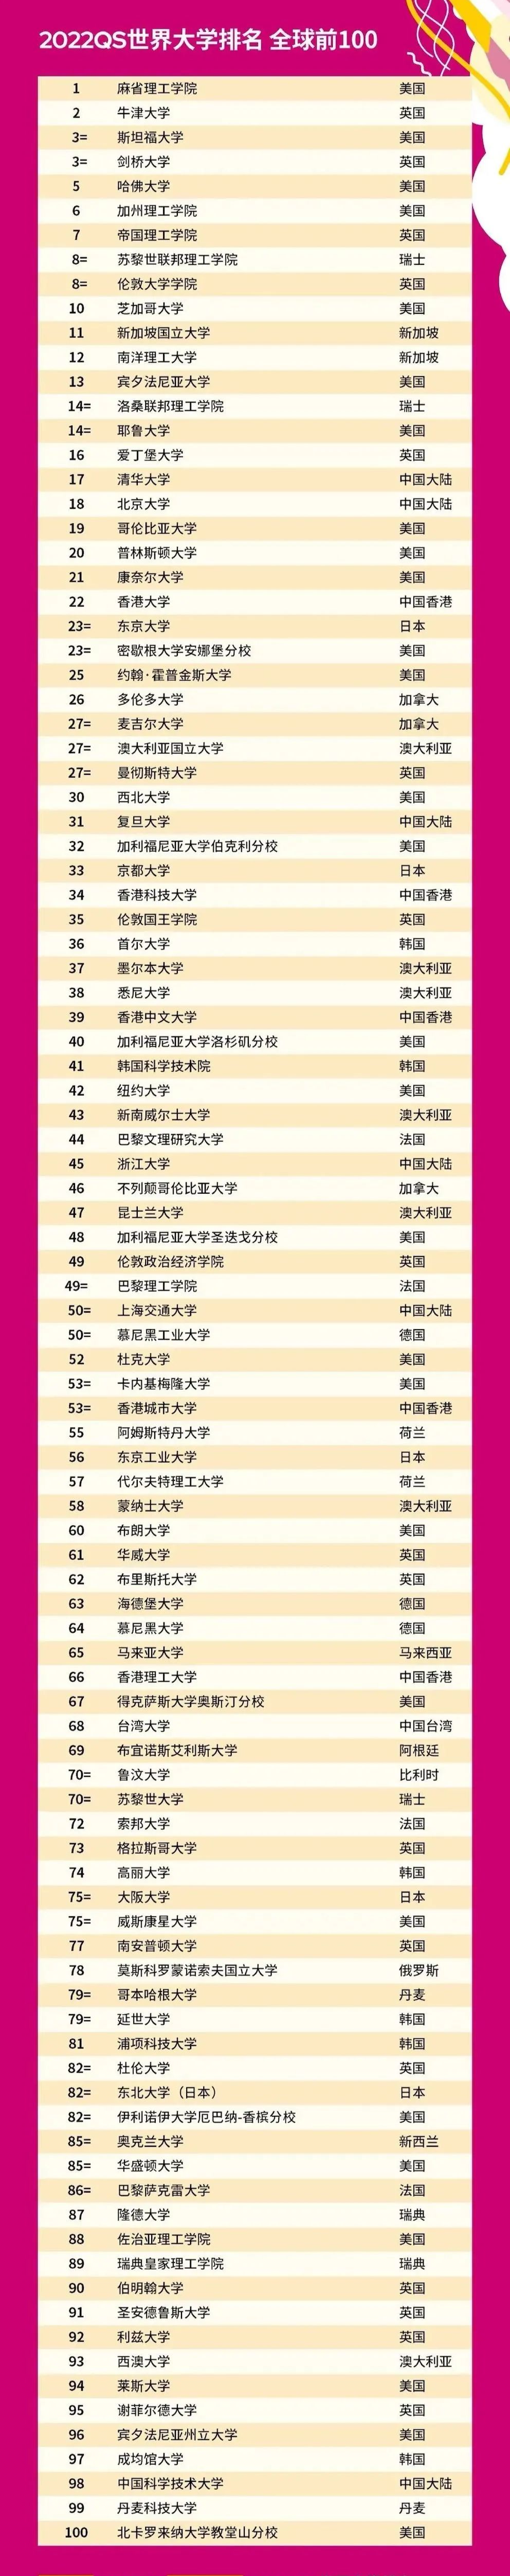 中国大学世界排名